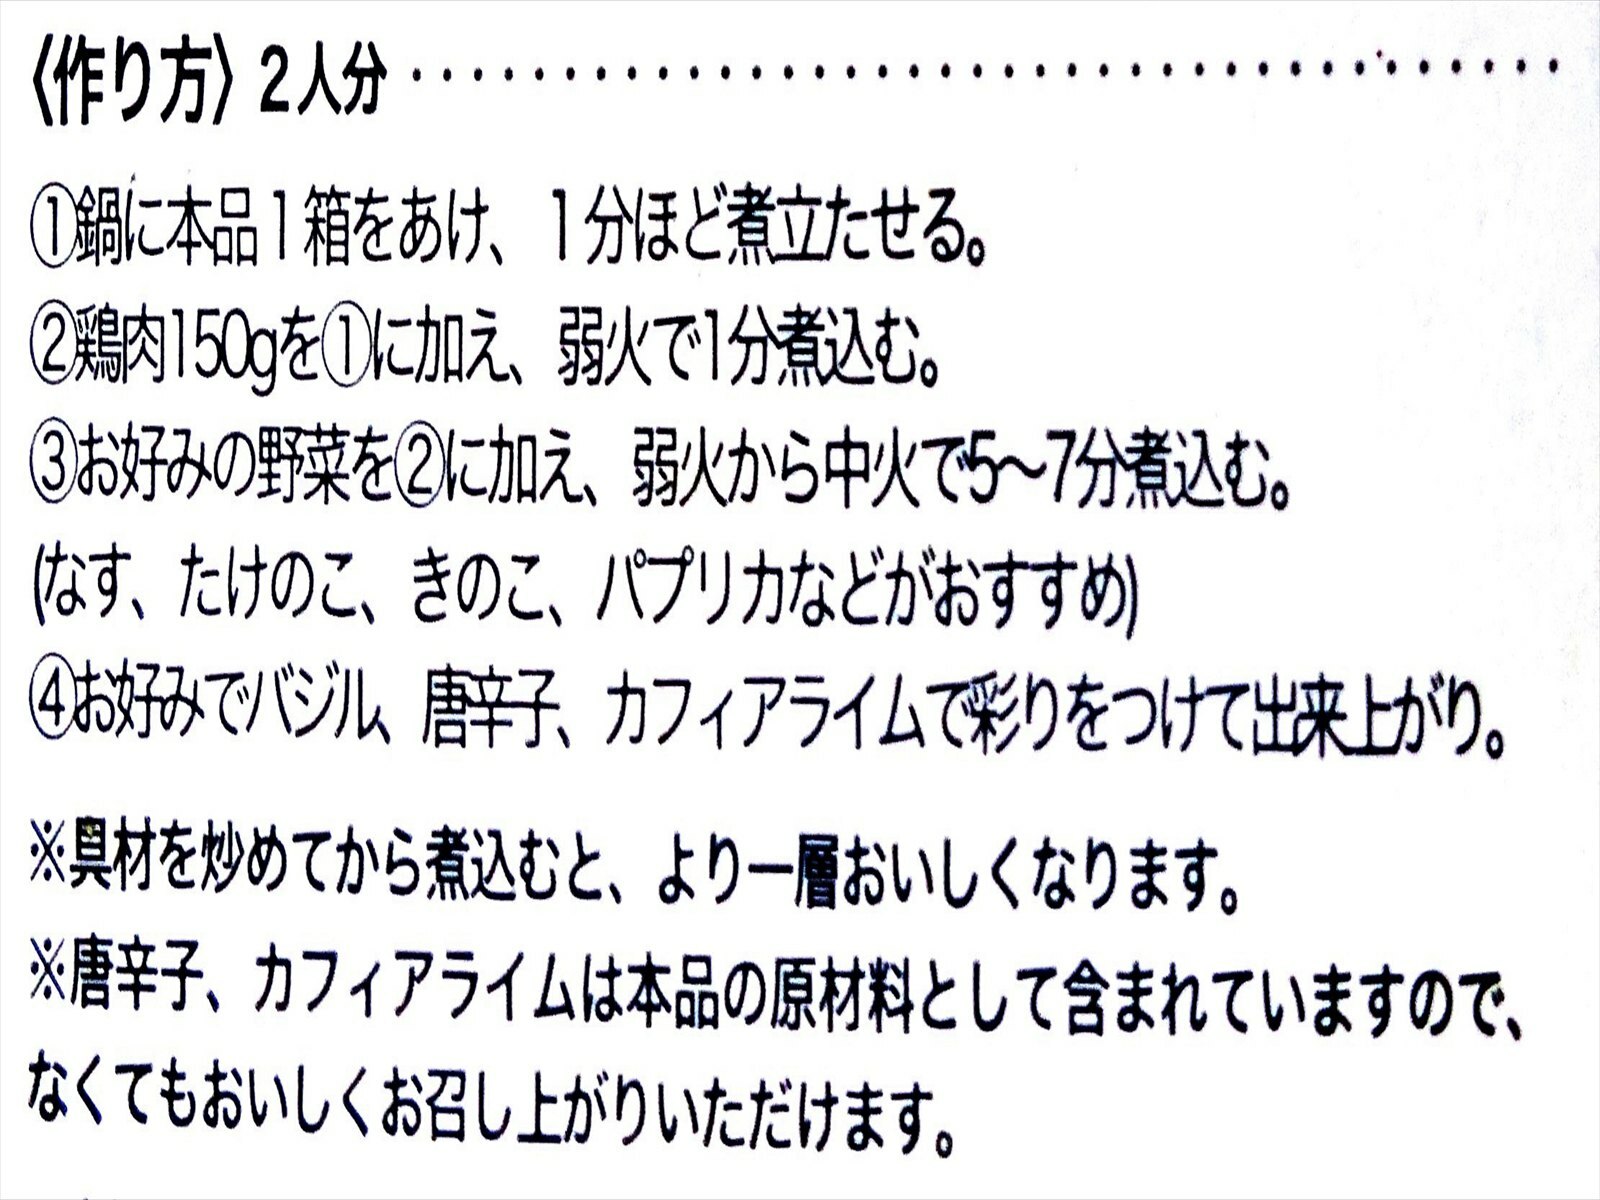 食品表示ラベルに記載されている作り方は、日本語で記載されています。